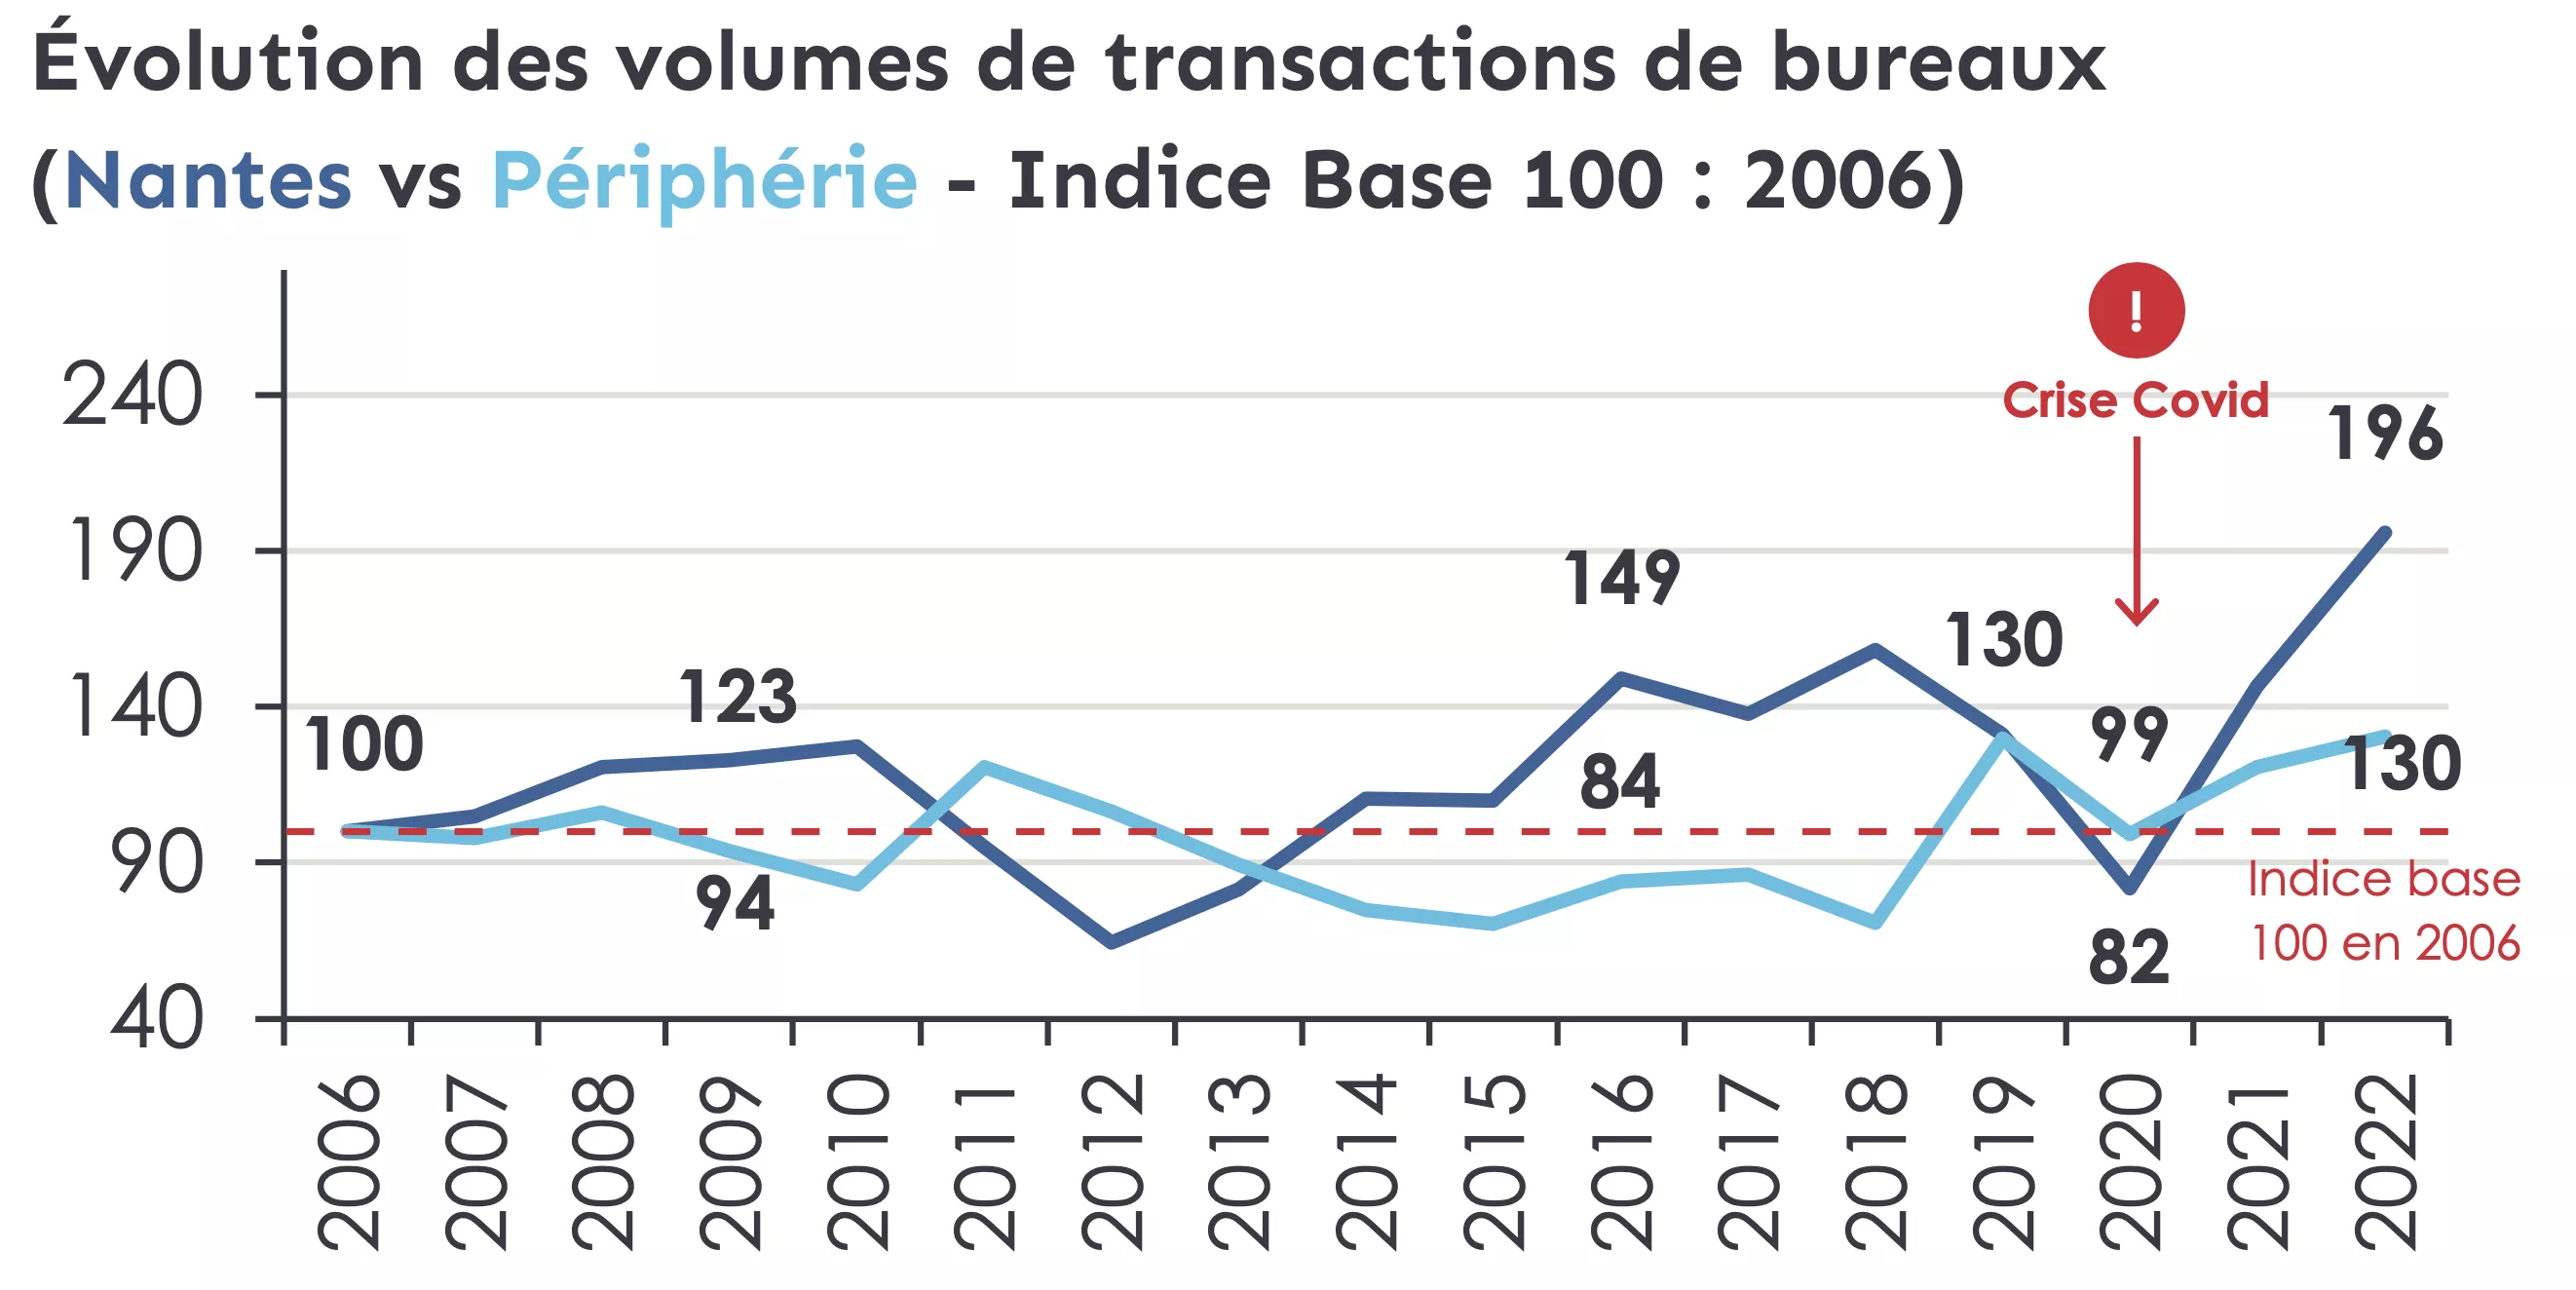 Nantes évolution des volumes de transactions de bureaux